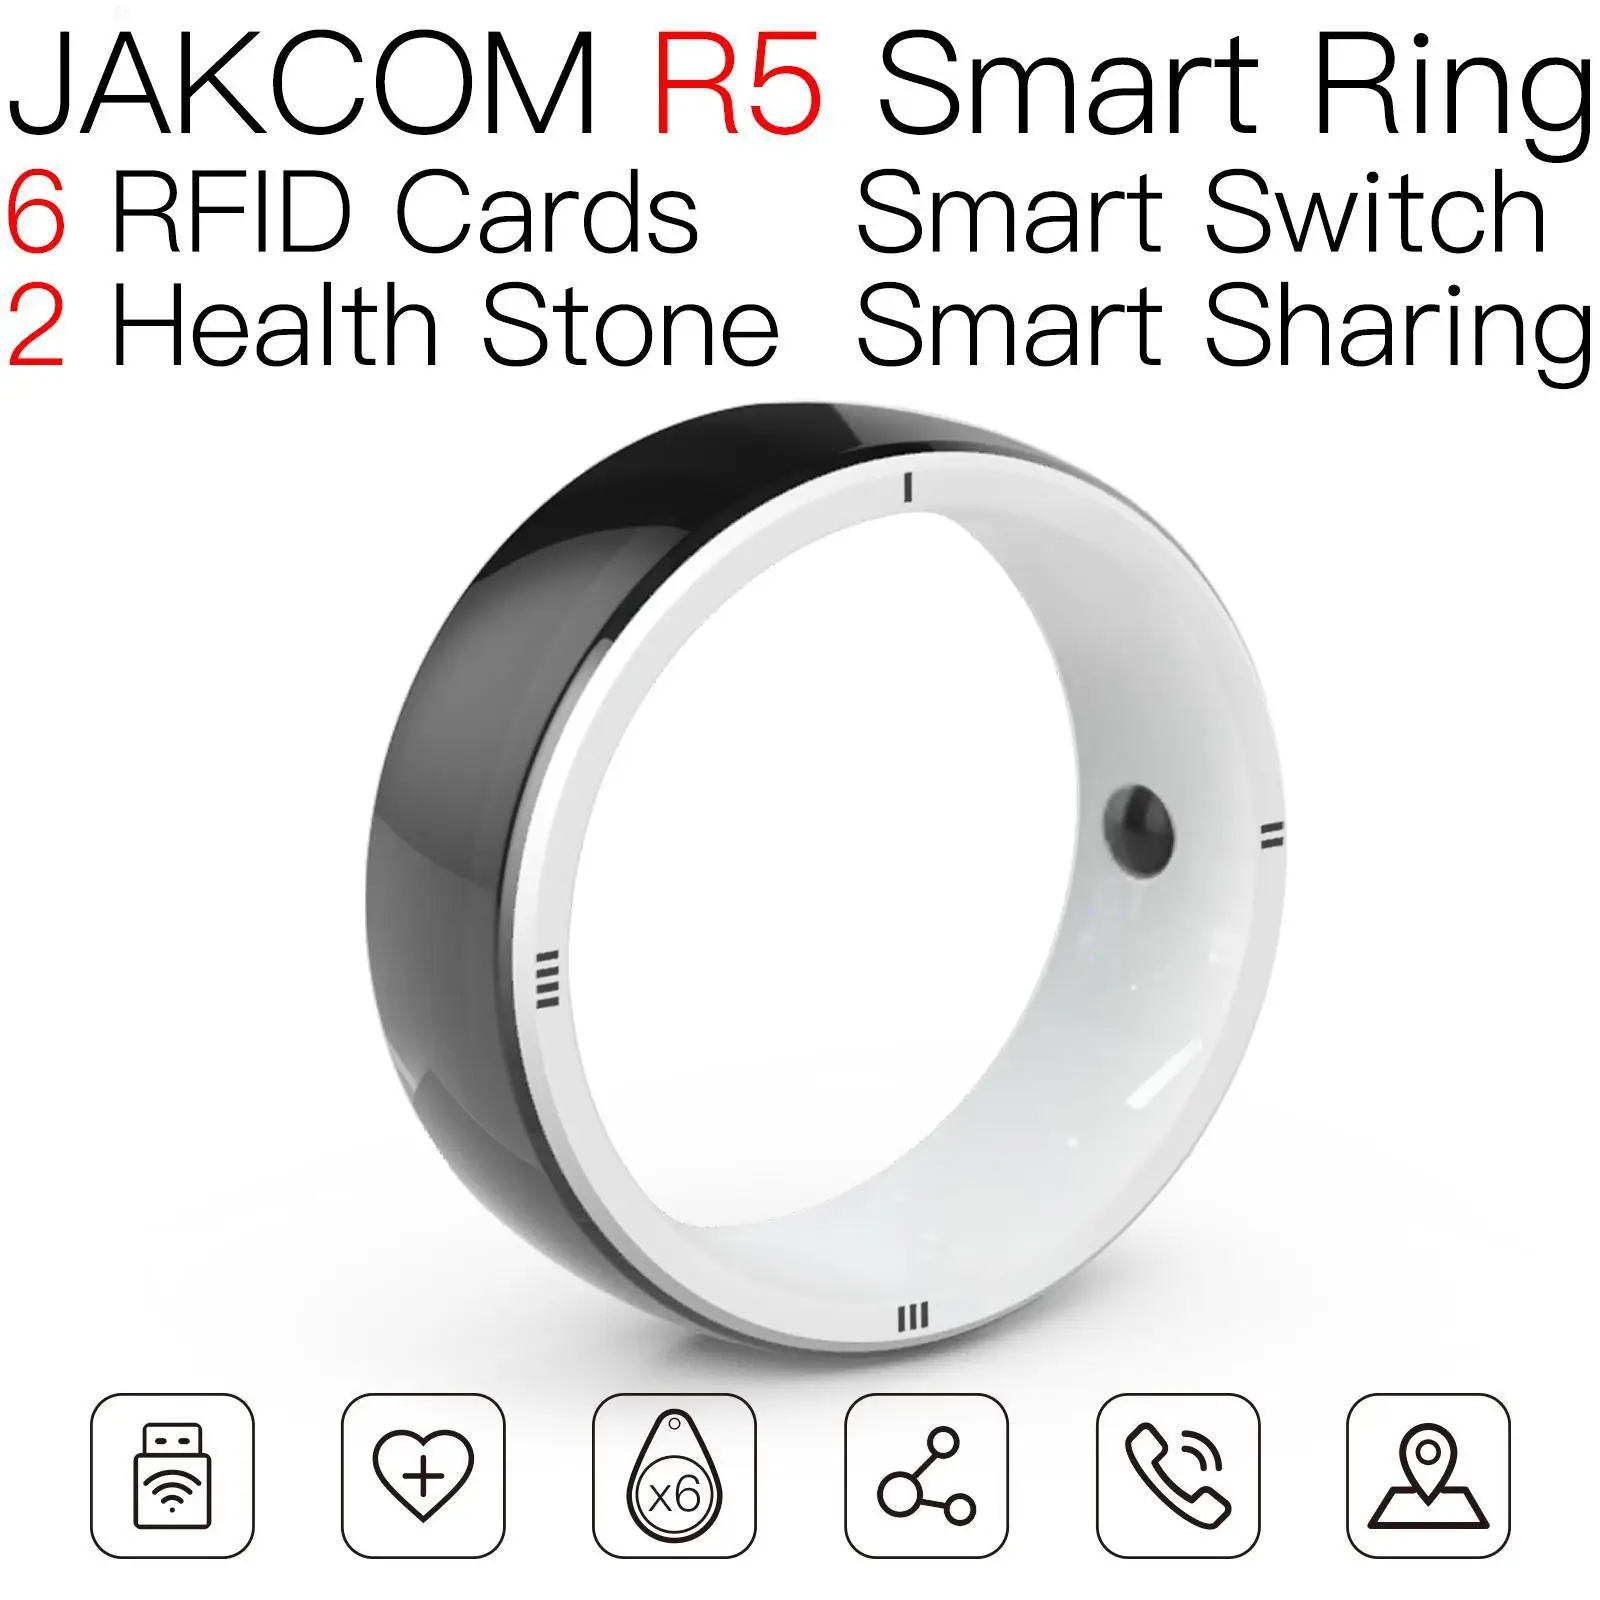 JAKCOM R5 Smart Ring Super value в качестве брелоков для мужчин worldchips 125 кГц 100 шт piccioni office 2019 плюс 7-байтовый uid . ' - ' . 0